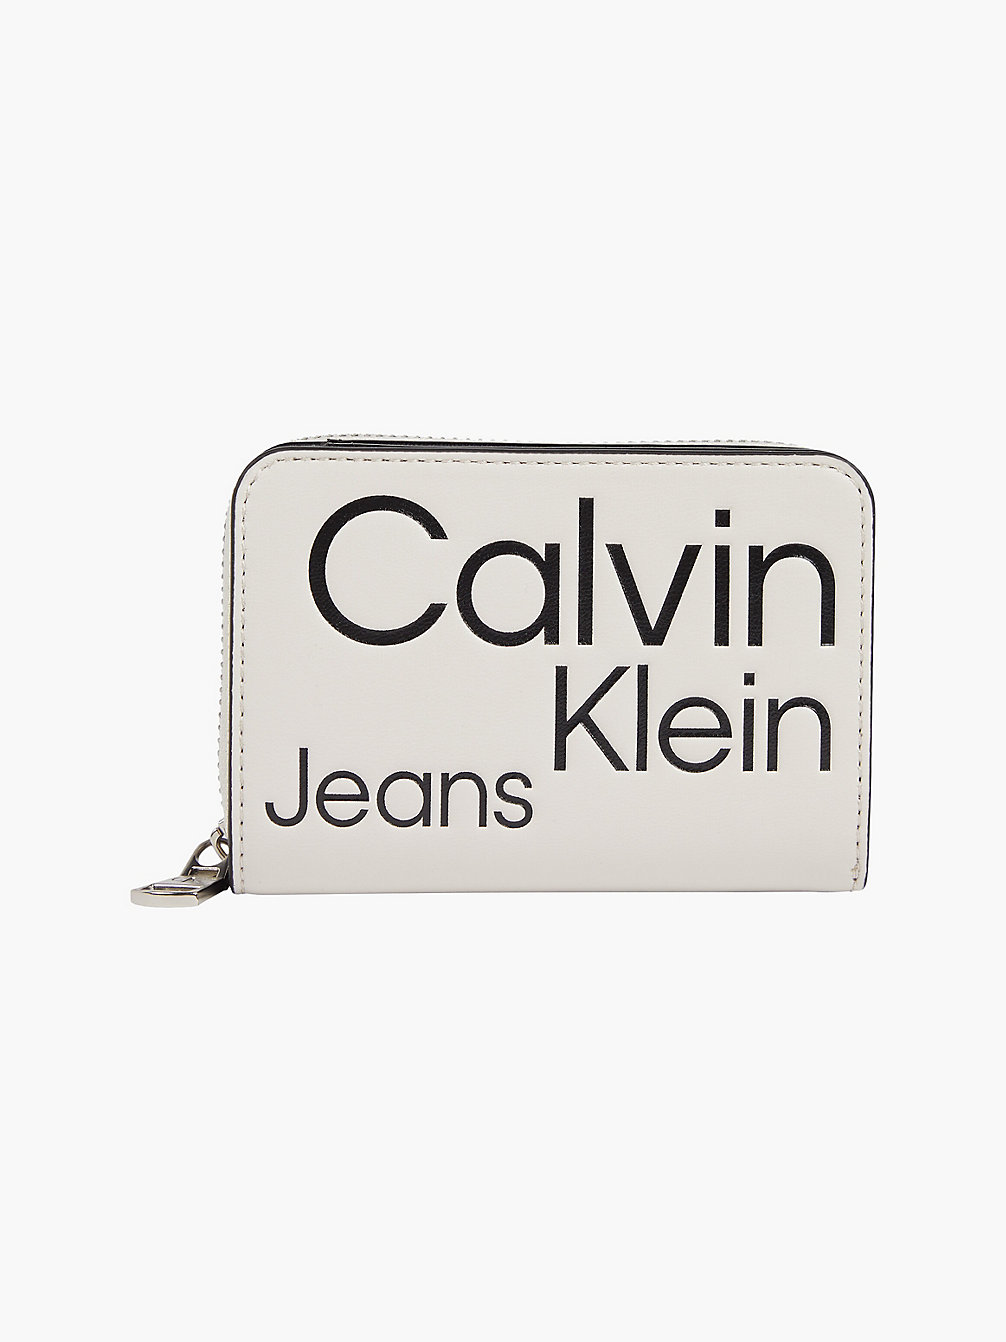 BEIGE AOP > Кошелек на круговой молнии с логотипом с защитой Rfid > undefined Женщины - Calvin Klein